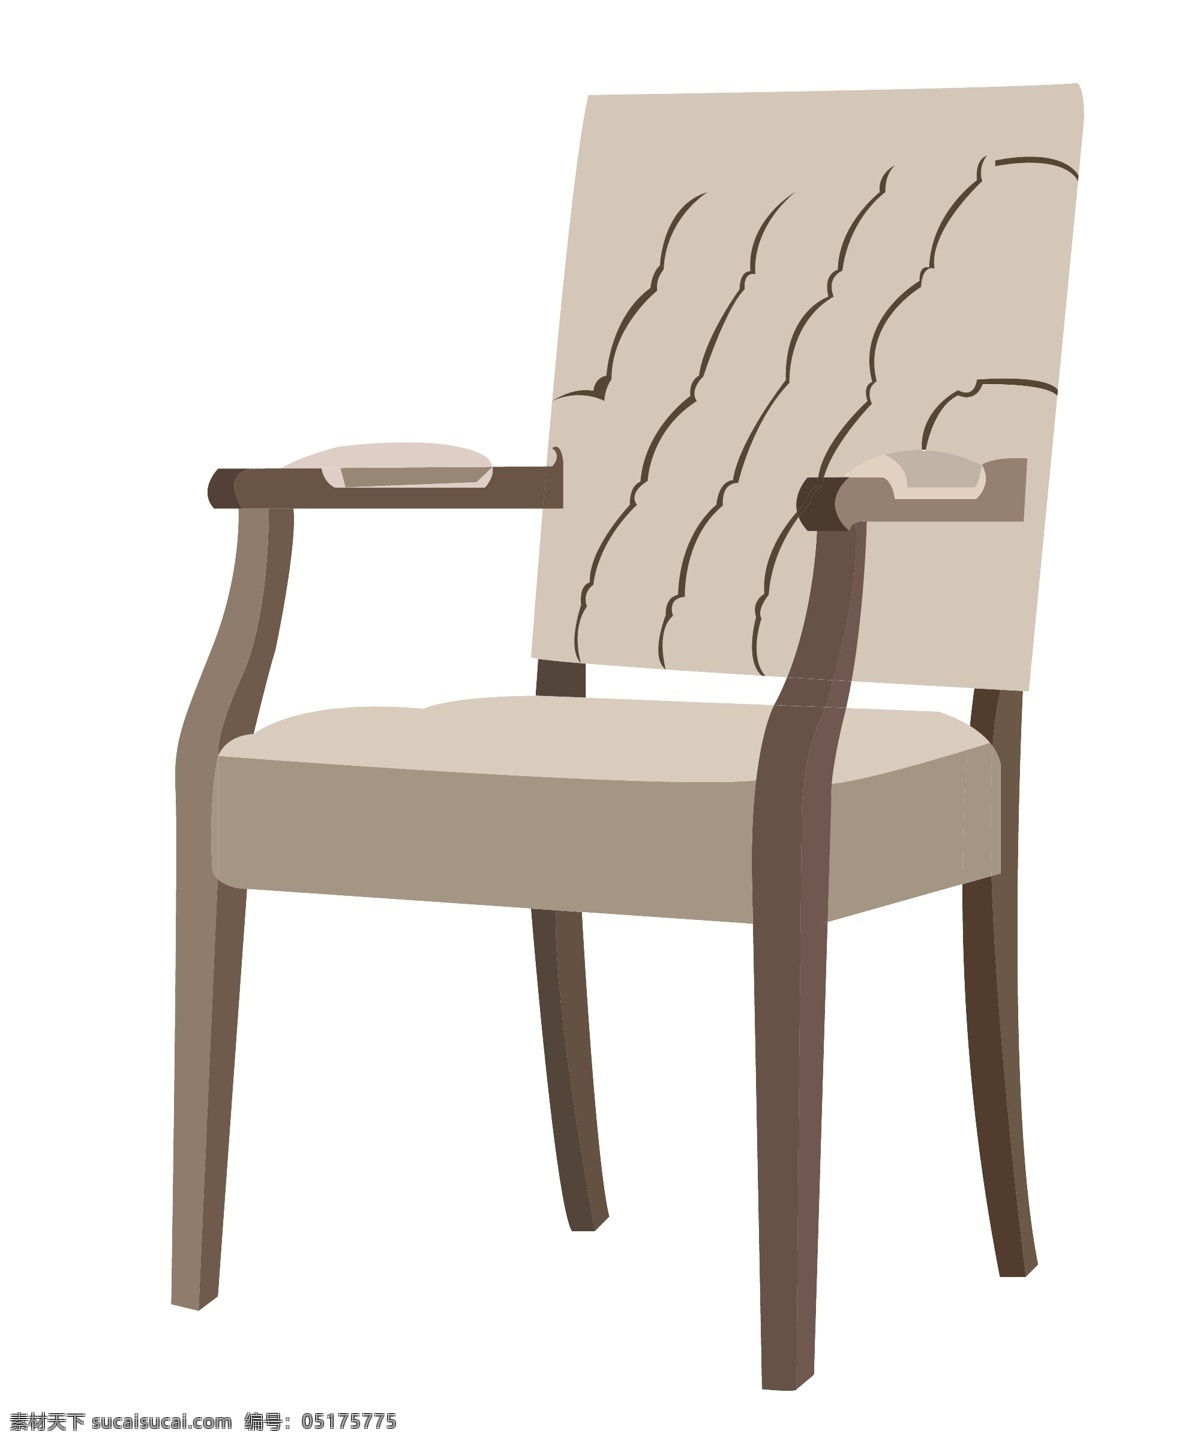 豪华 椅子 装饰 插画 豪华椅子 灰色的椅子 白色的垫子 漂亮的椅子 椅子装饰 木头椅子 家具椅子